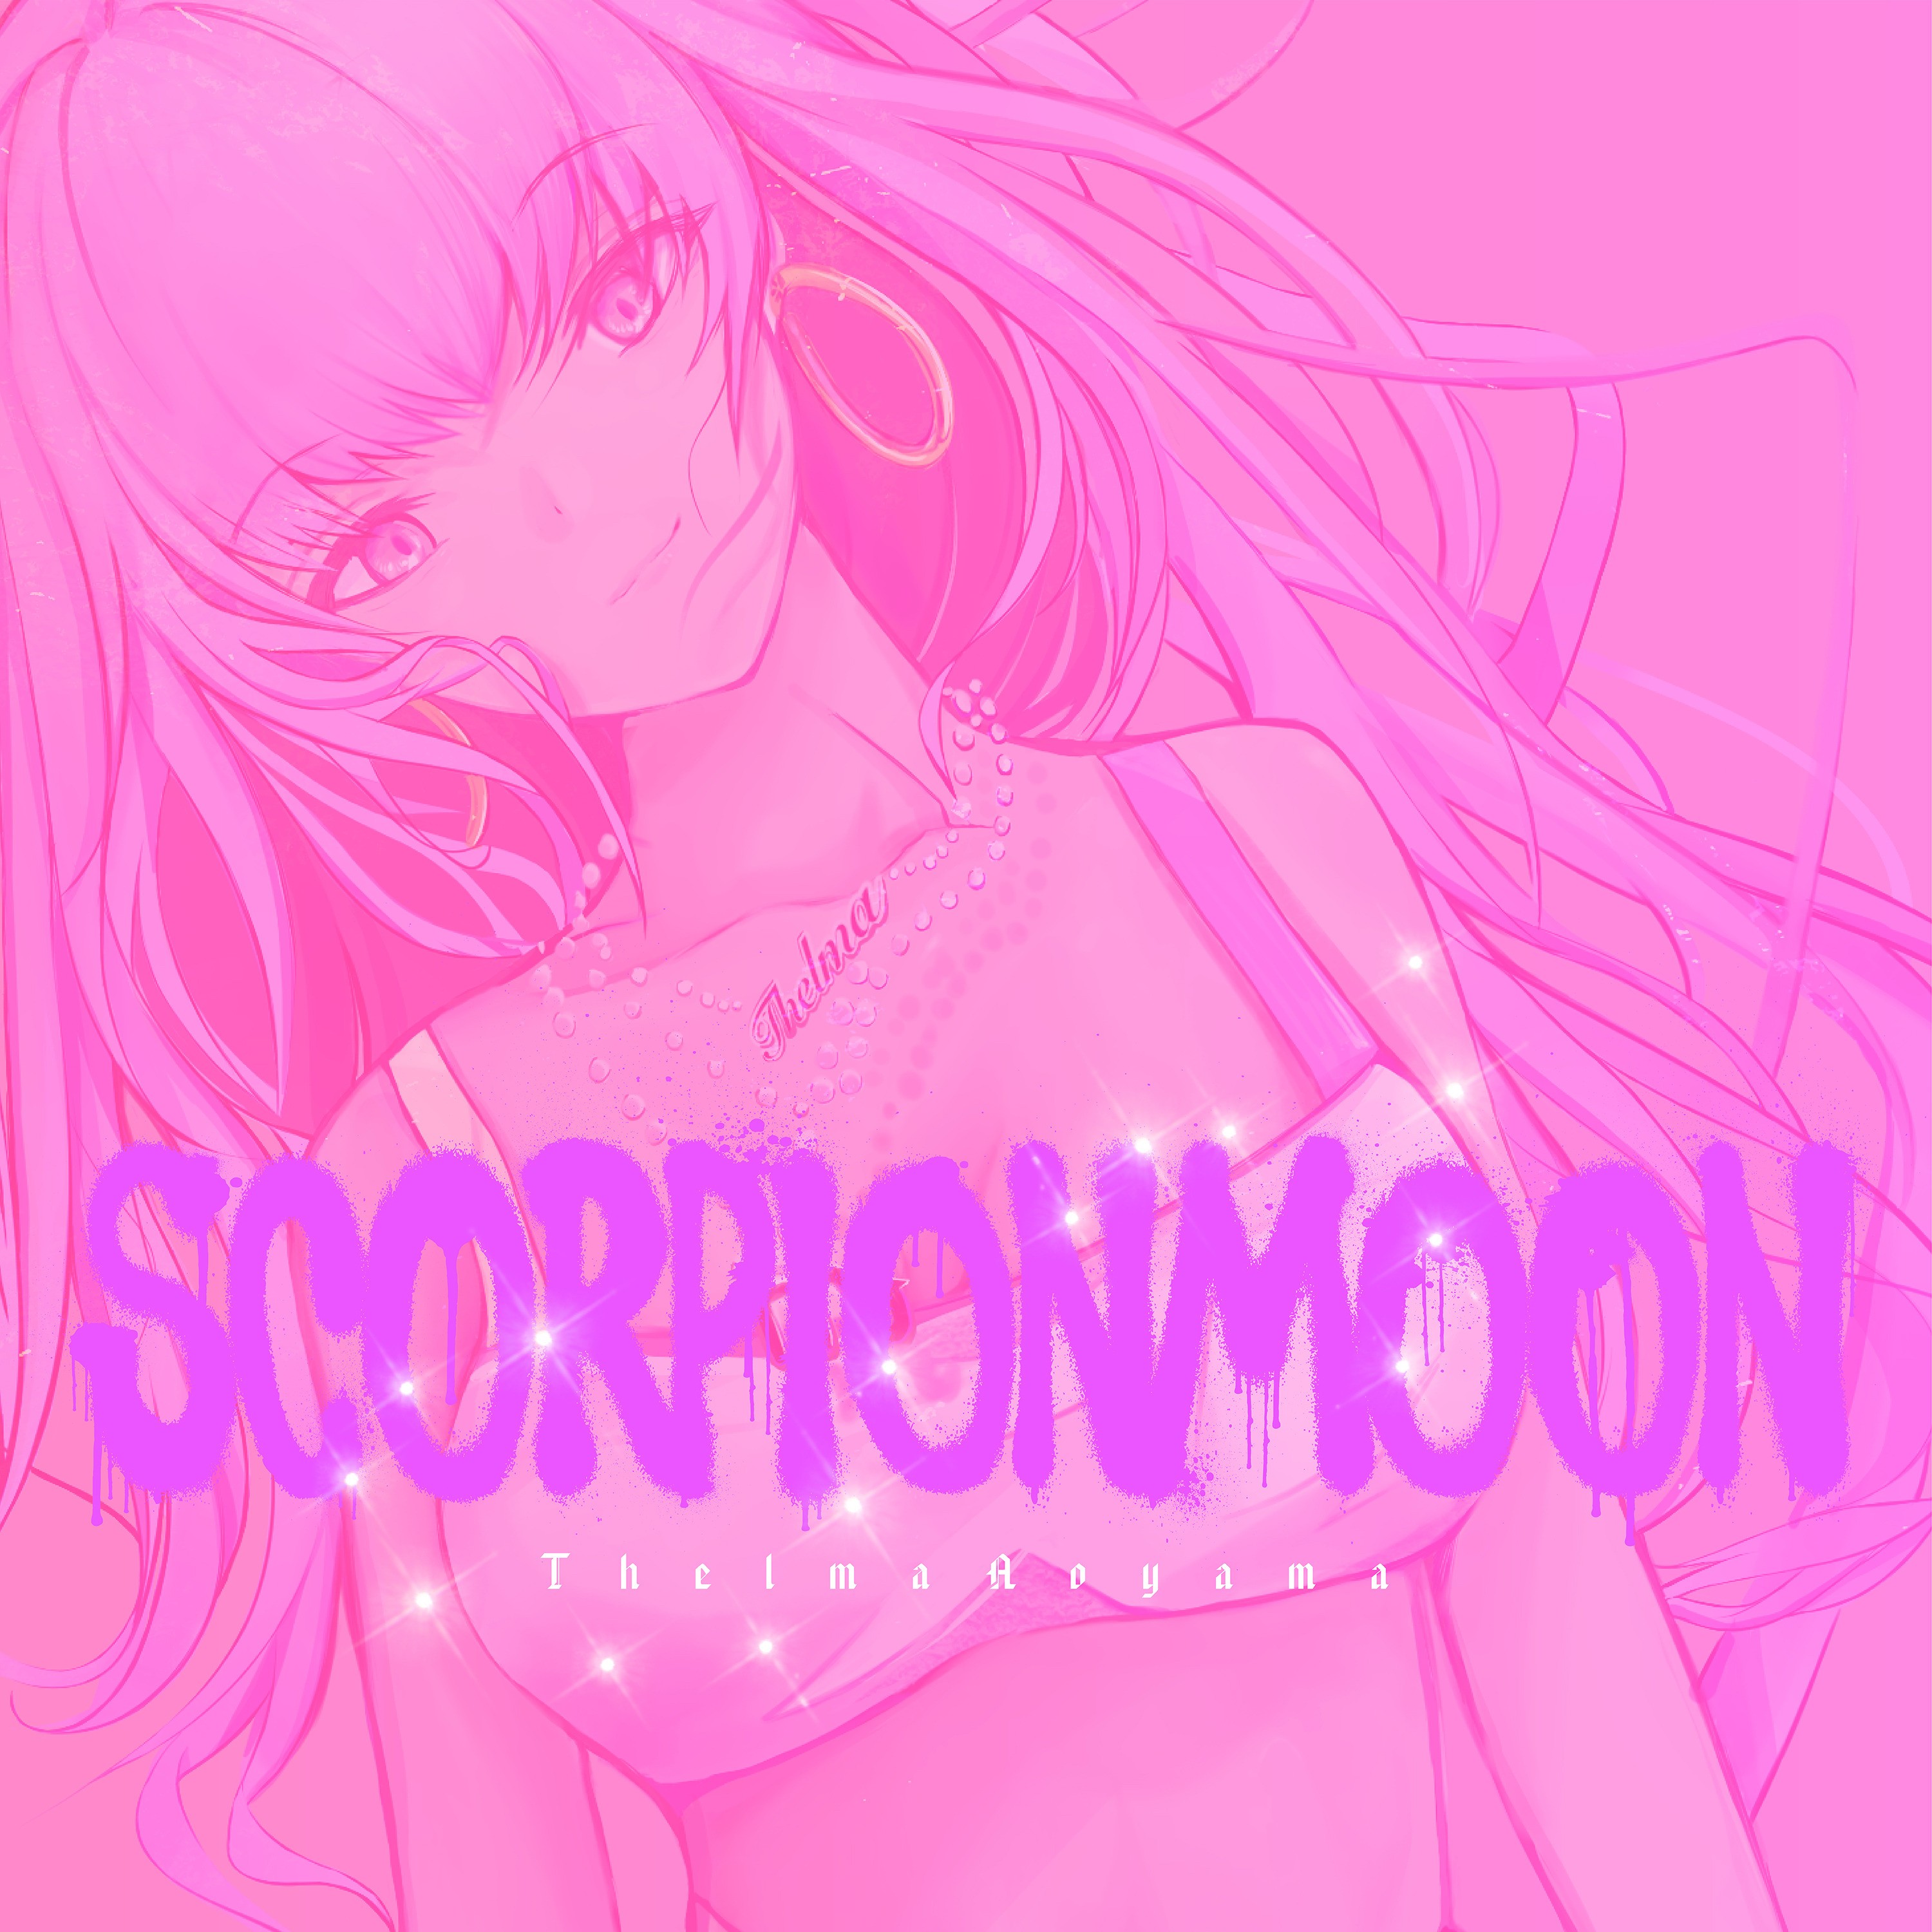 青山テルマ (Thelma Aoyama) – Scorpion Moon [FLAC / WEB] [2021.10.27]